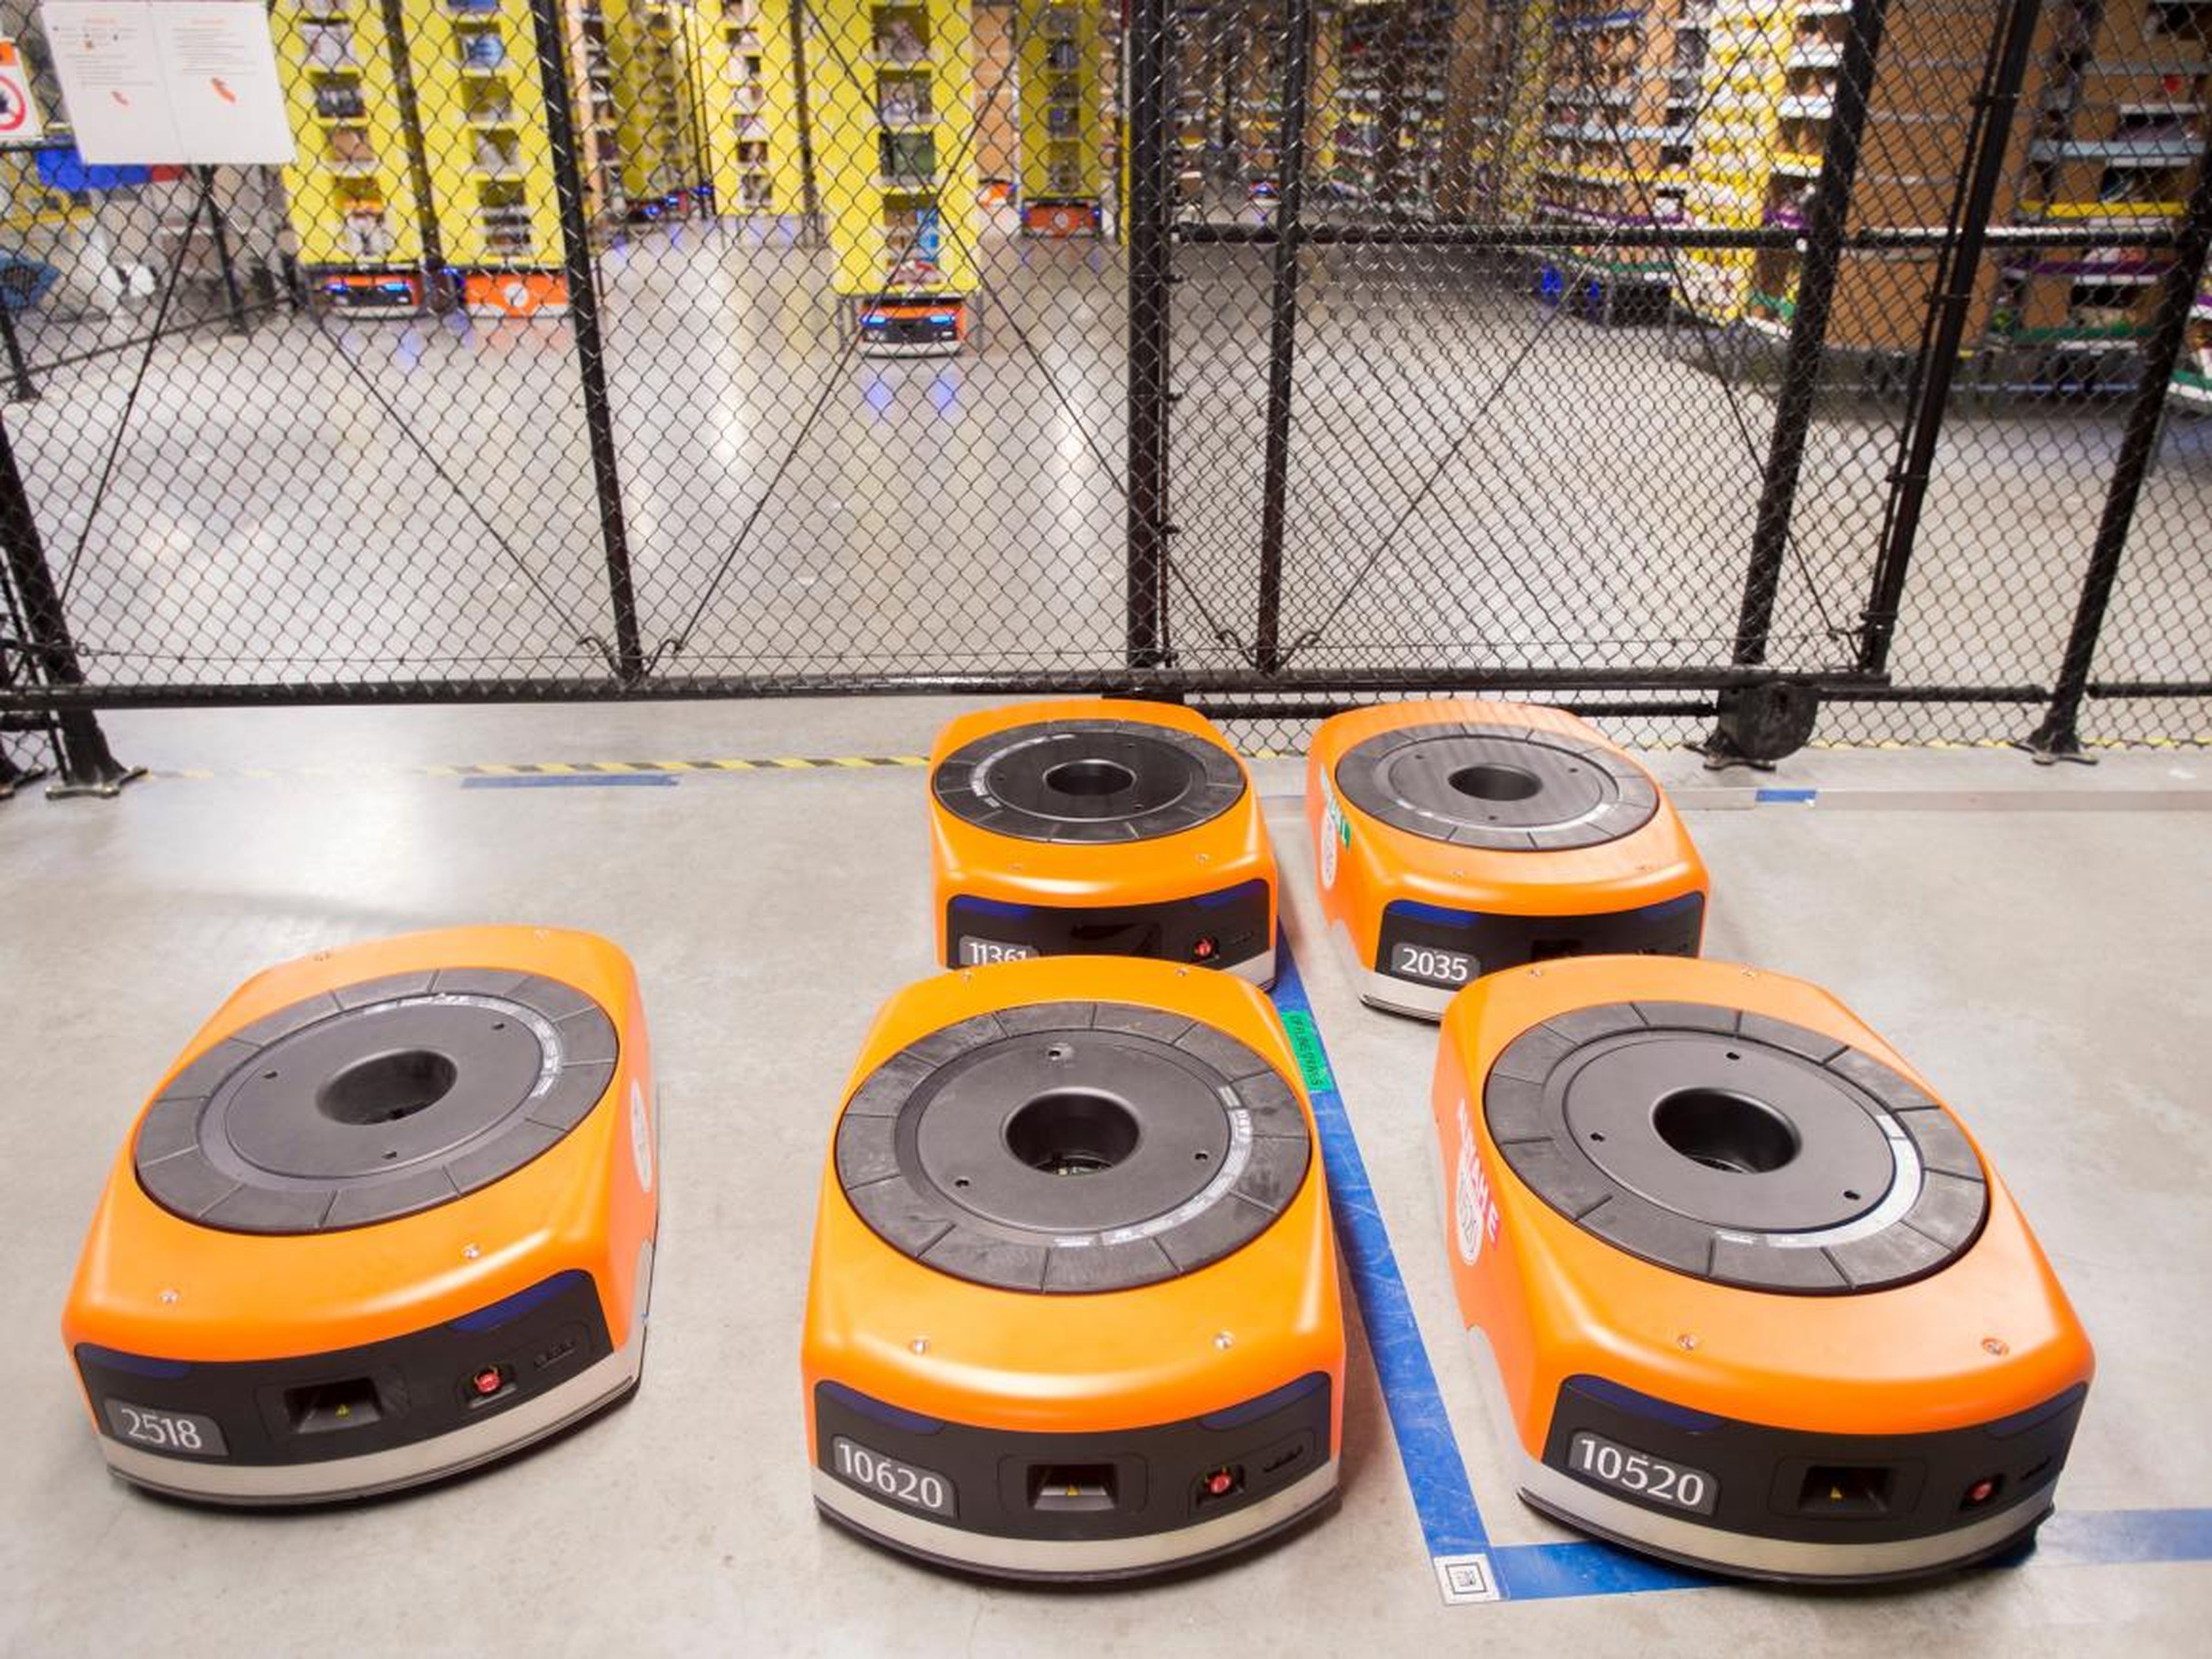 Robots in Amazon's warehouses.